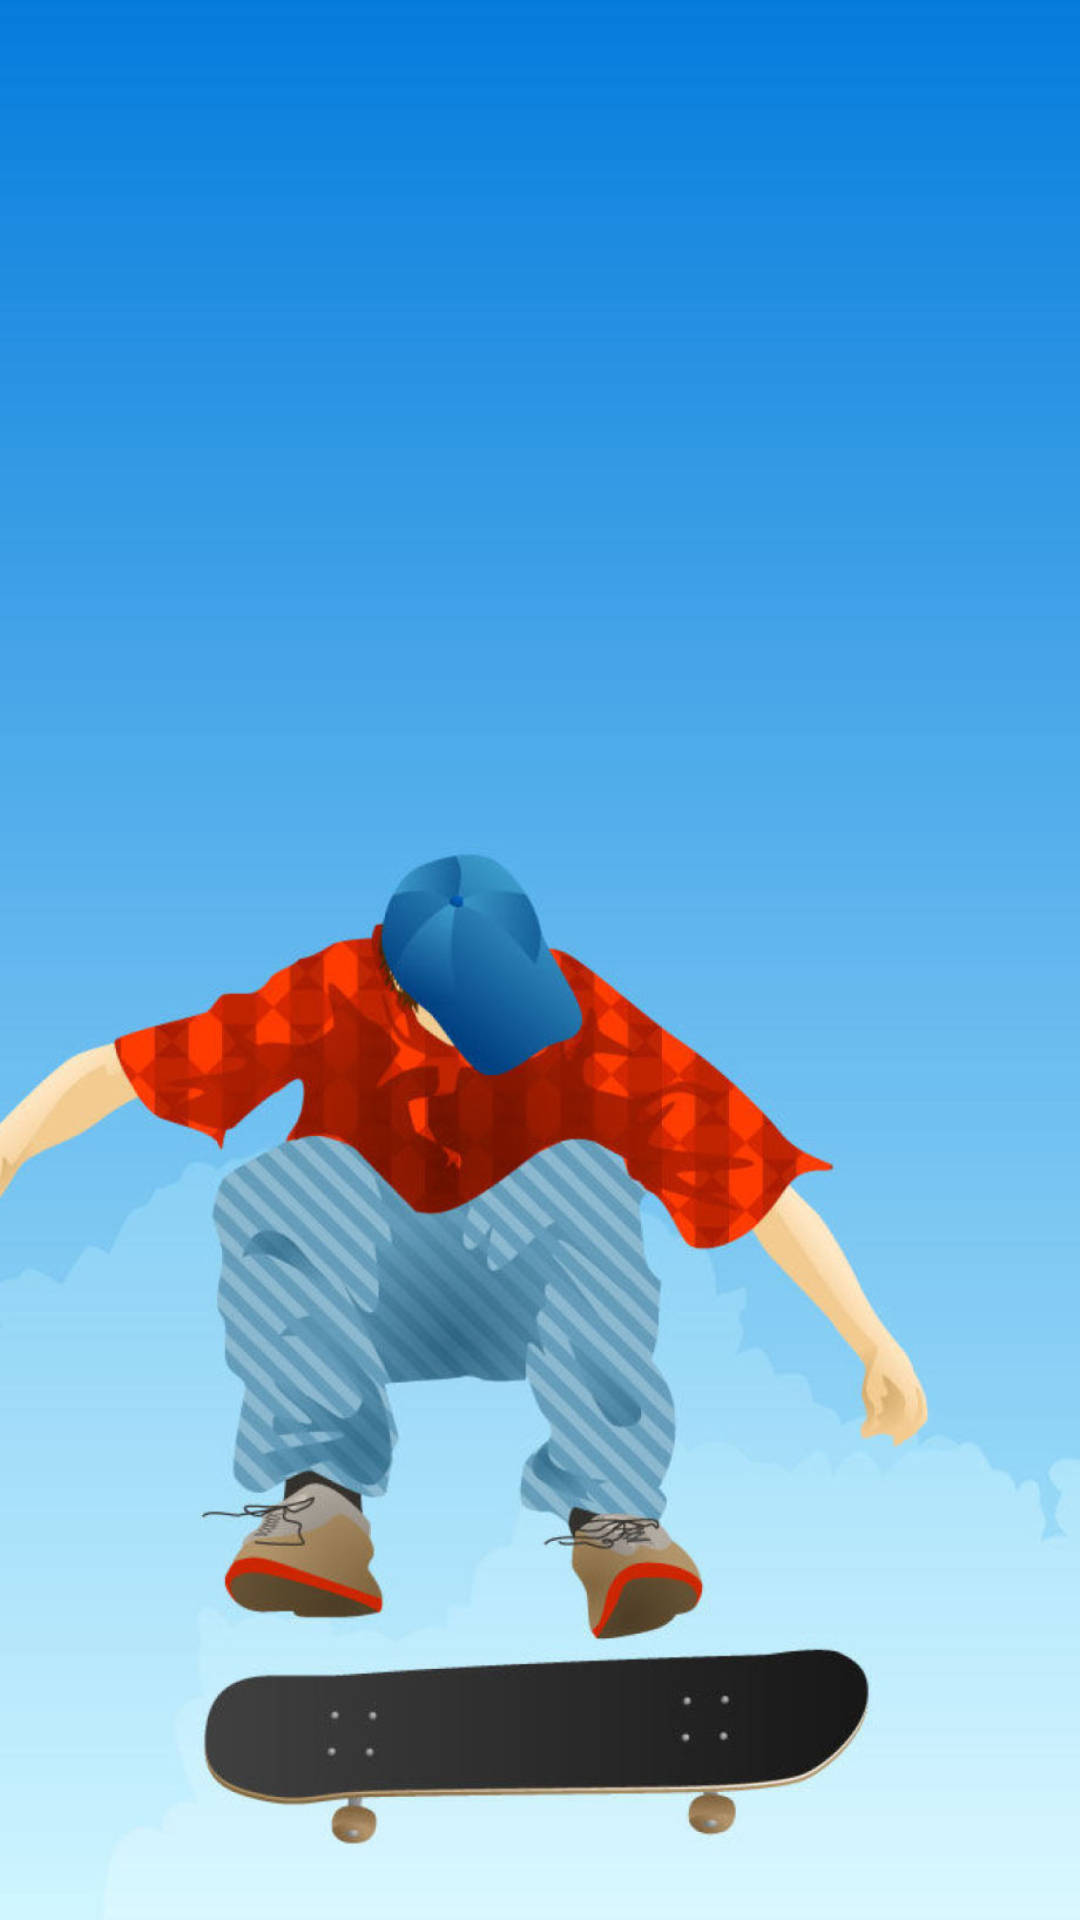 Aesthetic Skater Boy Digital Illustration Wallpaper